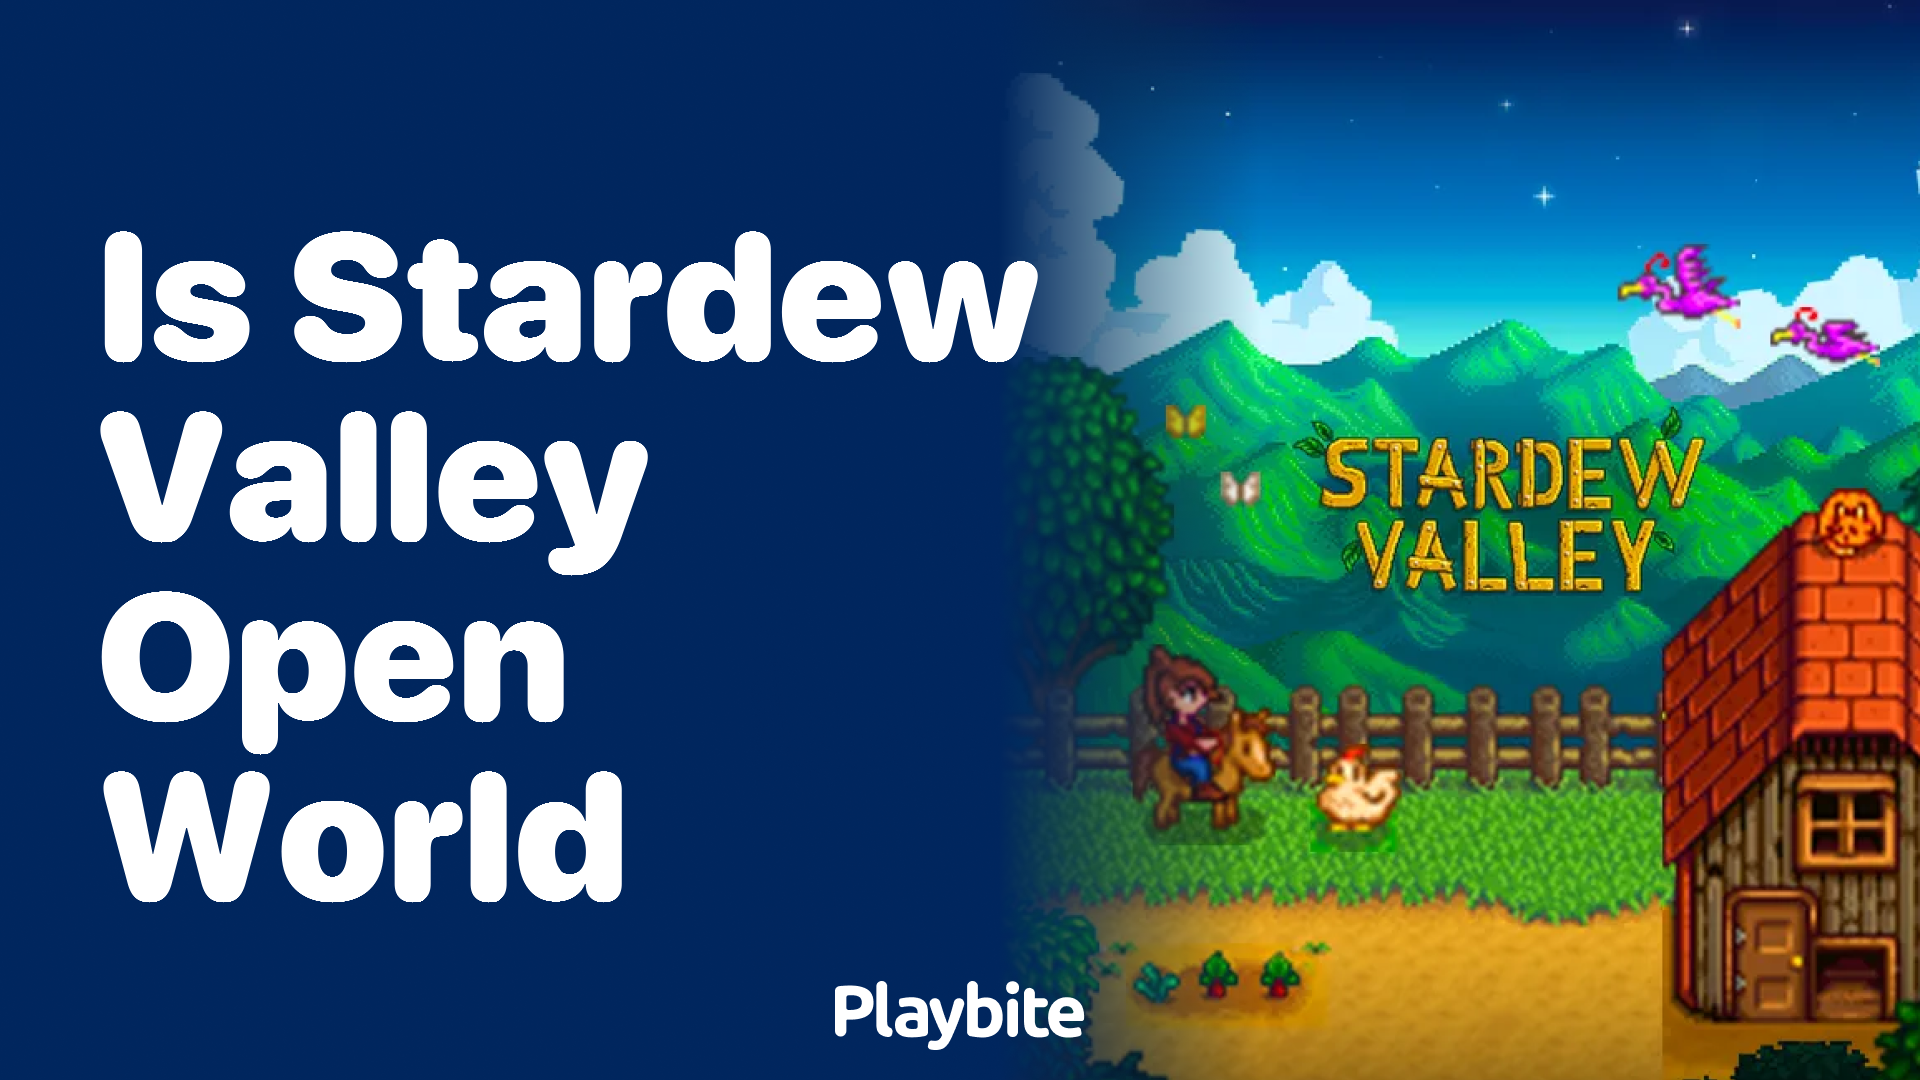 Is Stardew Valley Open World?